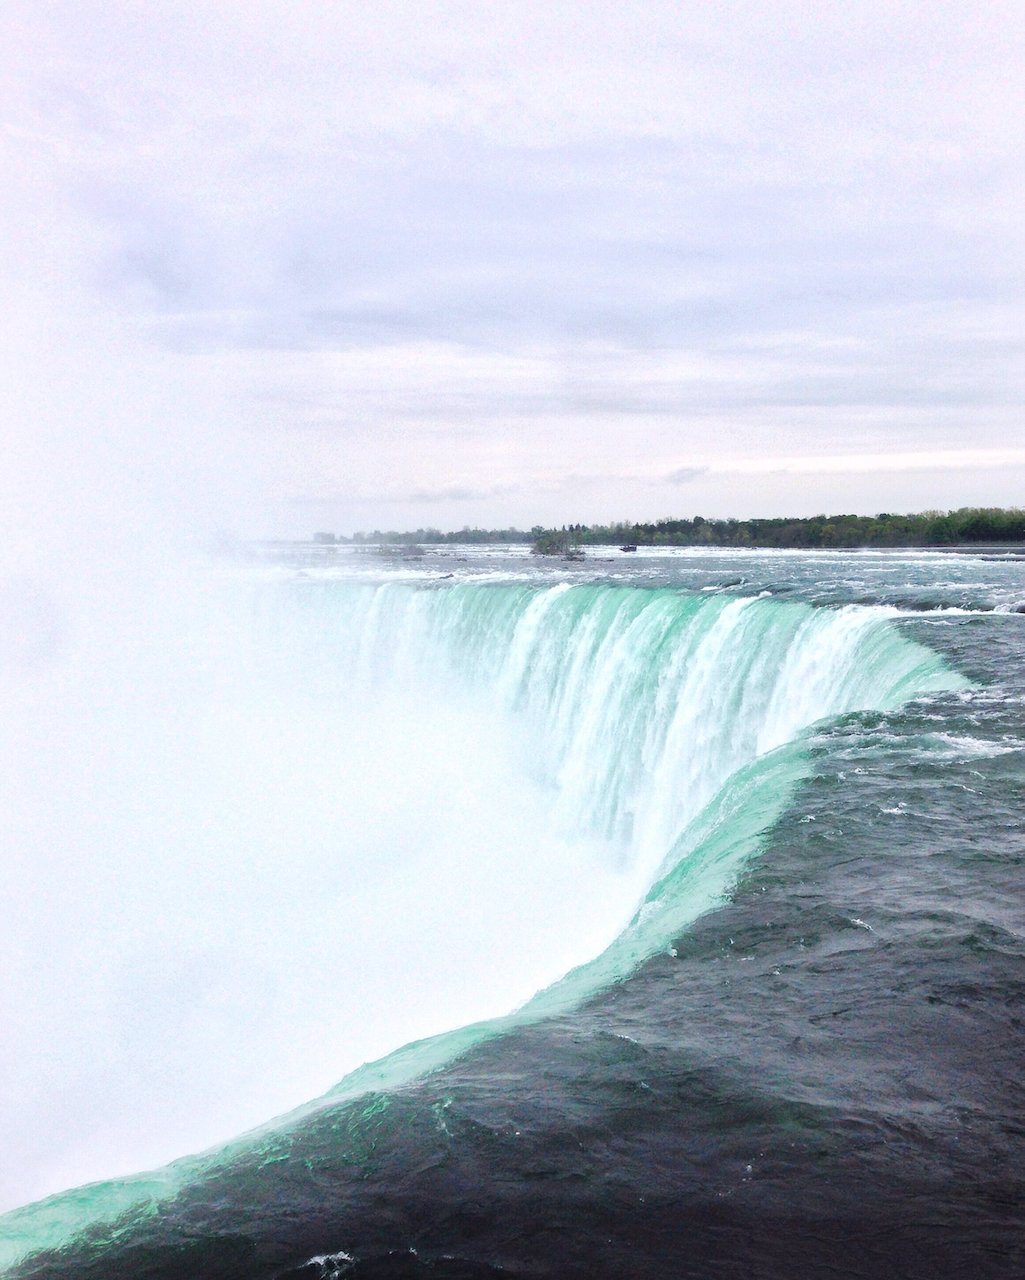 Le débit de l'eau aux chutes du Niagara - Ontario - Canada